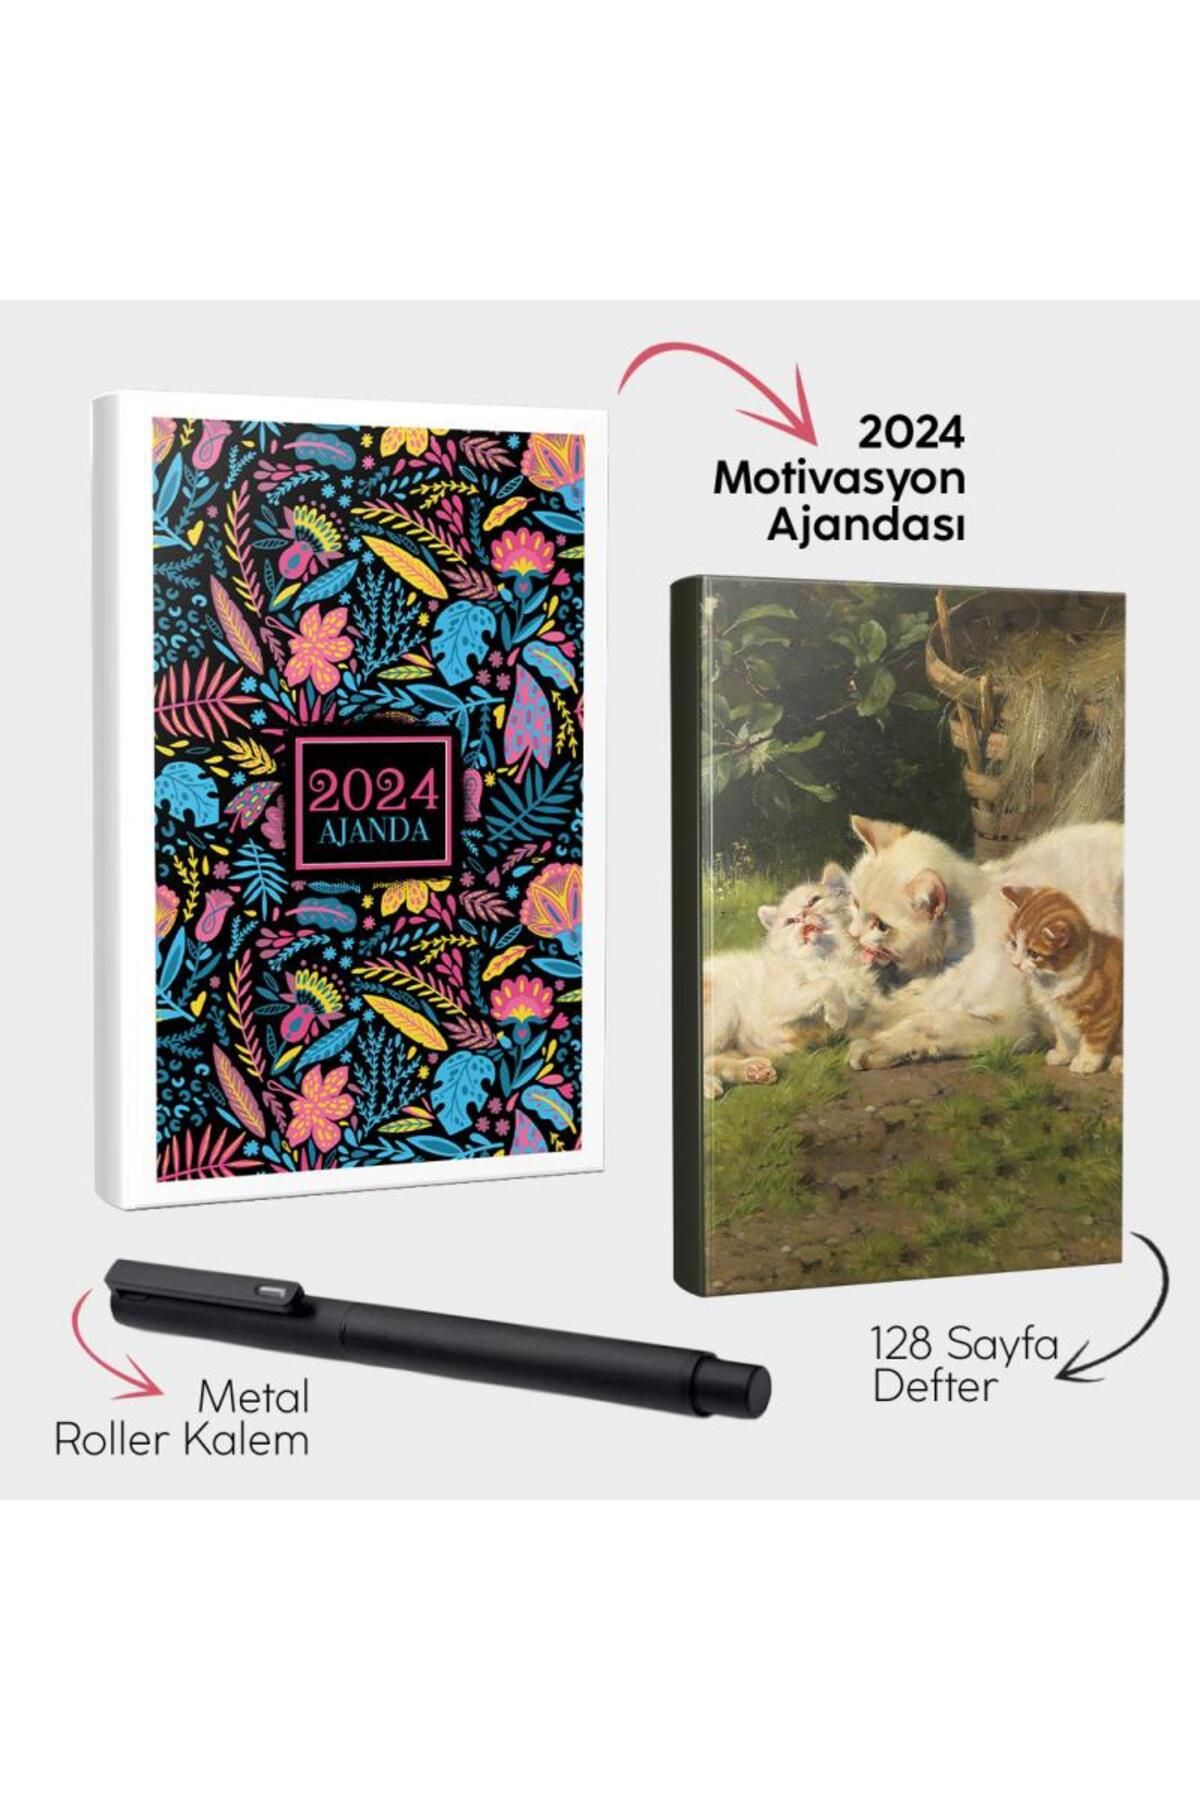 Halk Kitabevi Neon Düşler 2024 Motivasyon Ajandası - Kedi Ailesi Defter ve Metal Roller Kalem